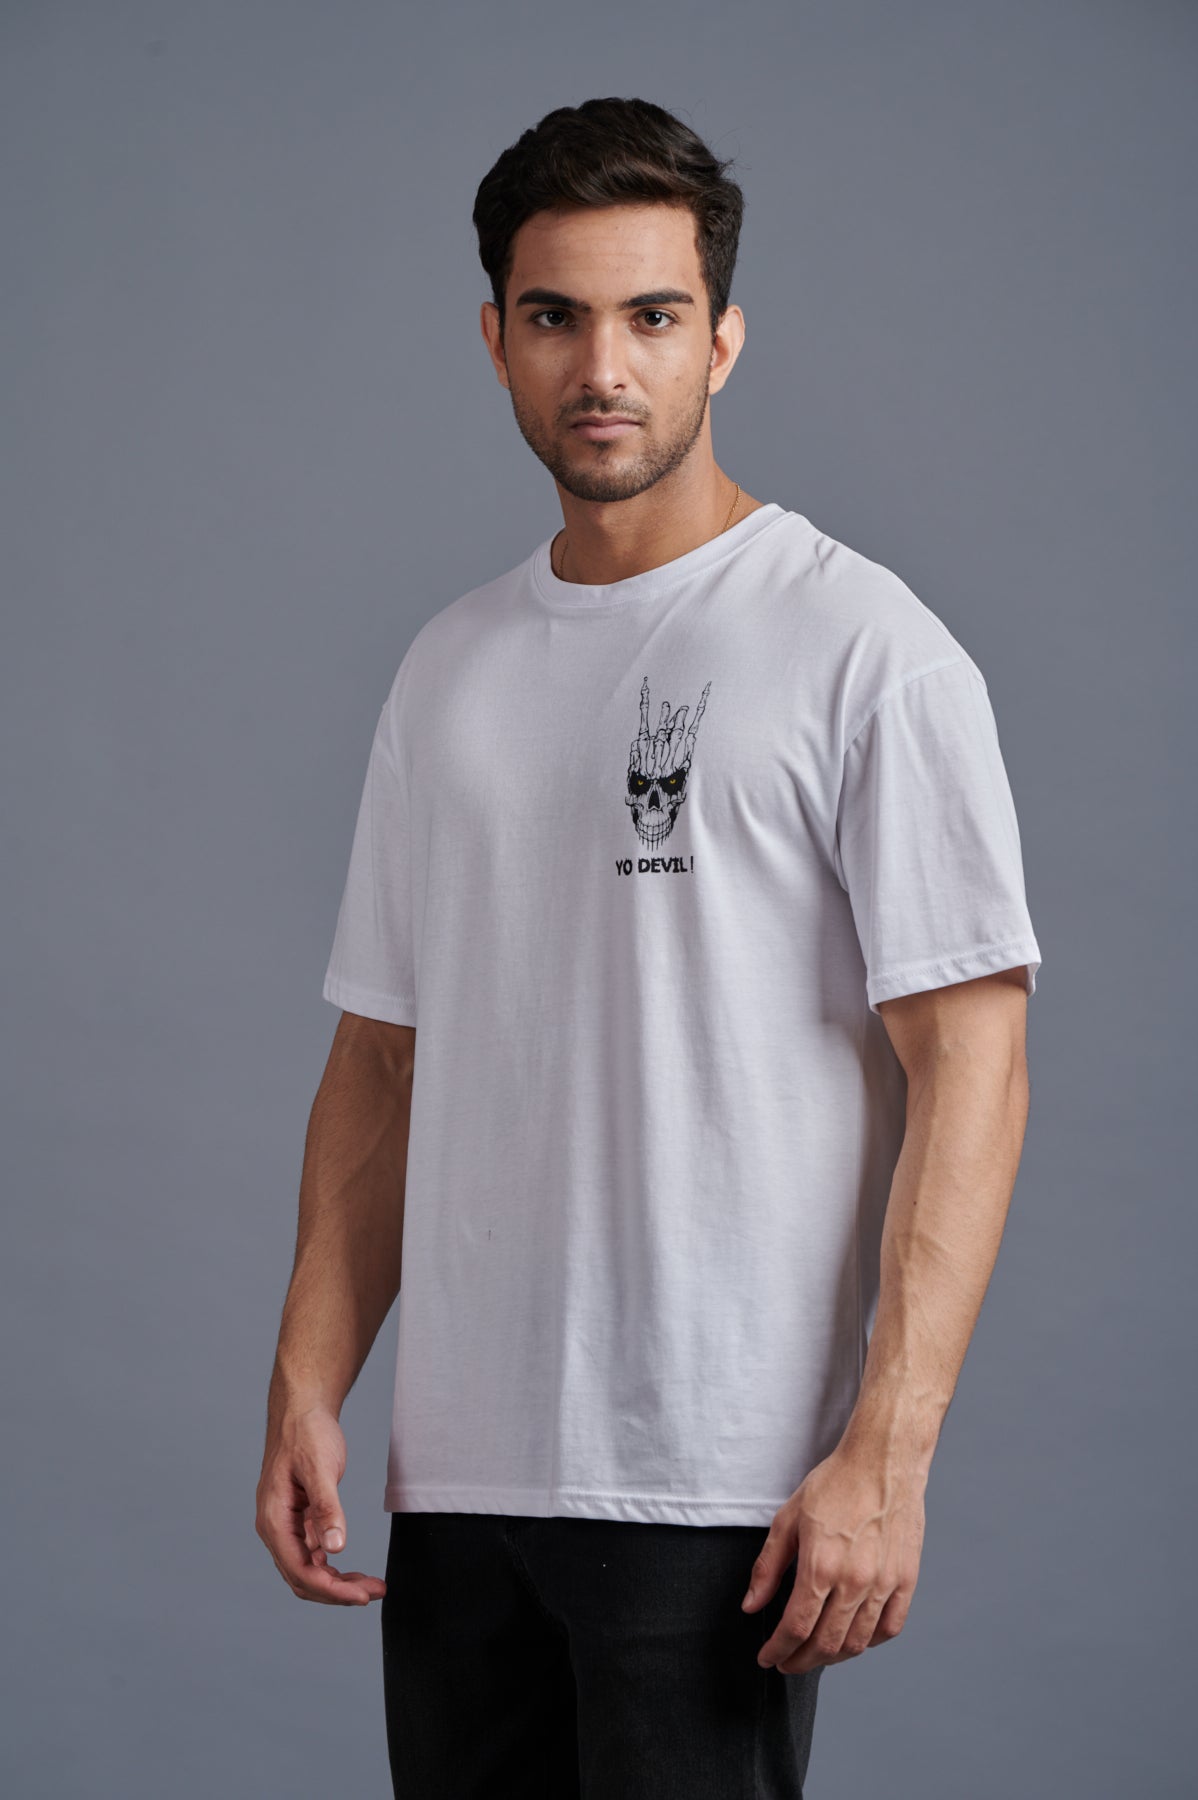 Yo Devil! Printed Oversized White T-Shirt for Men - Go Devil